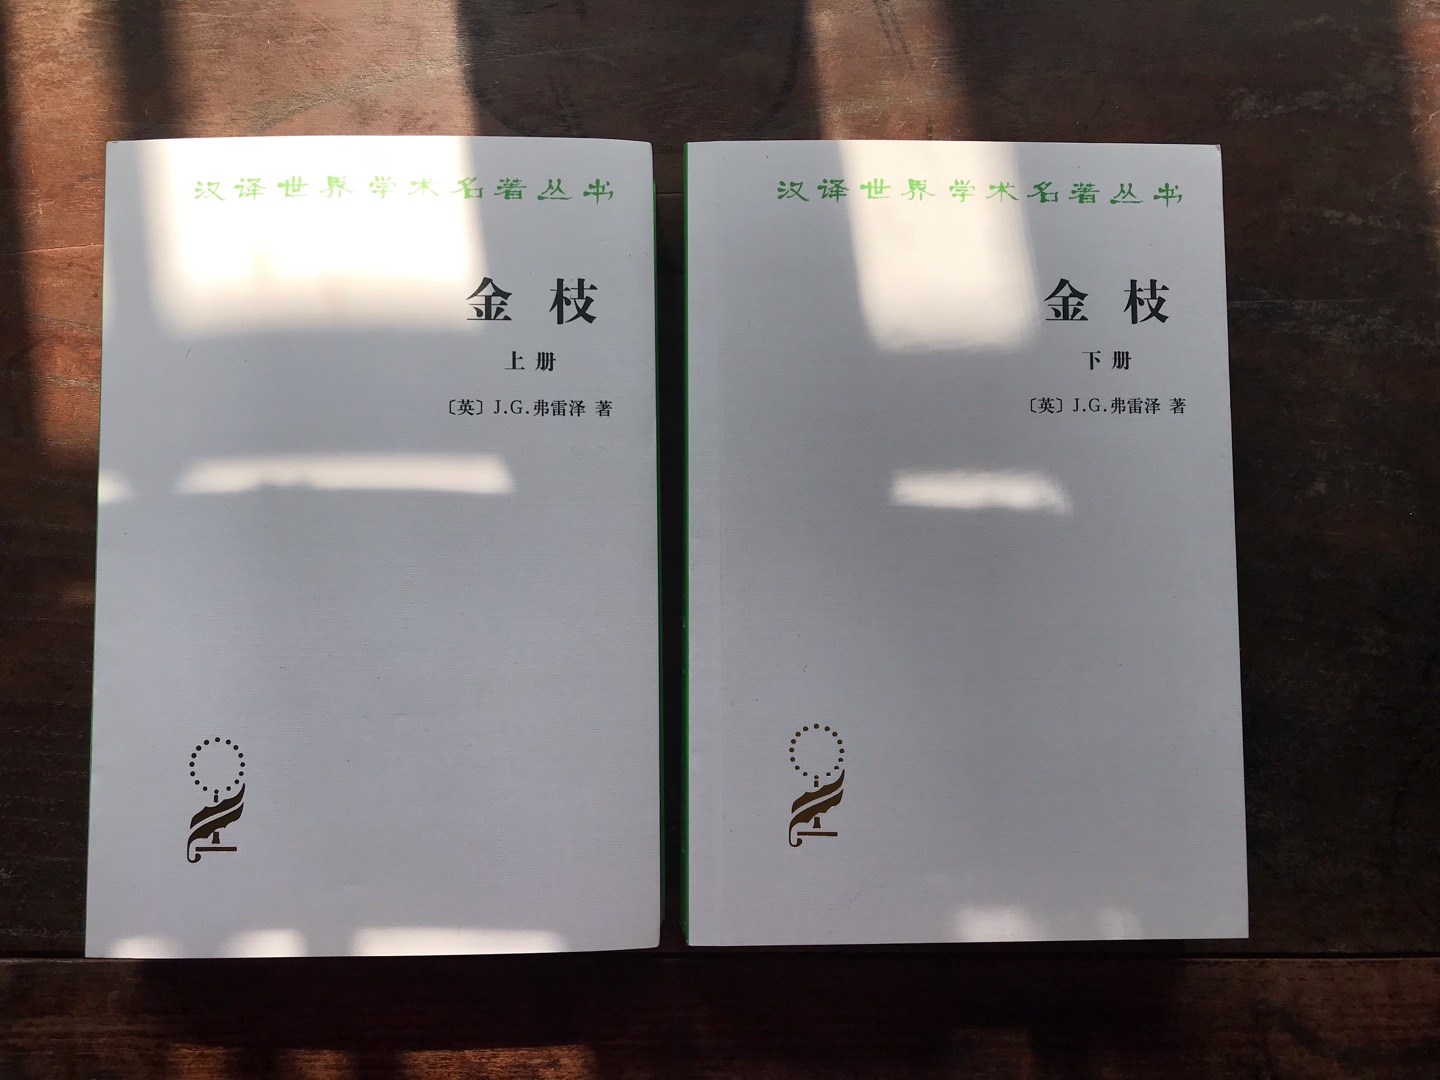 商务印书馆的汉译名著丛书版本非常好，这套《金枝》是人类学的经典之作，值得阅读收藏。